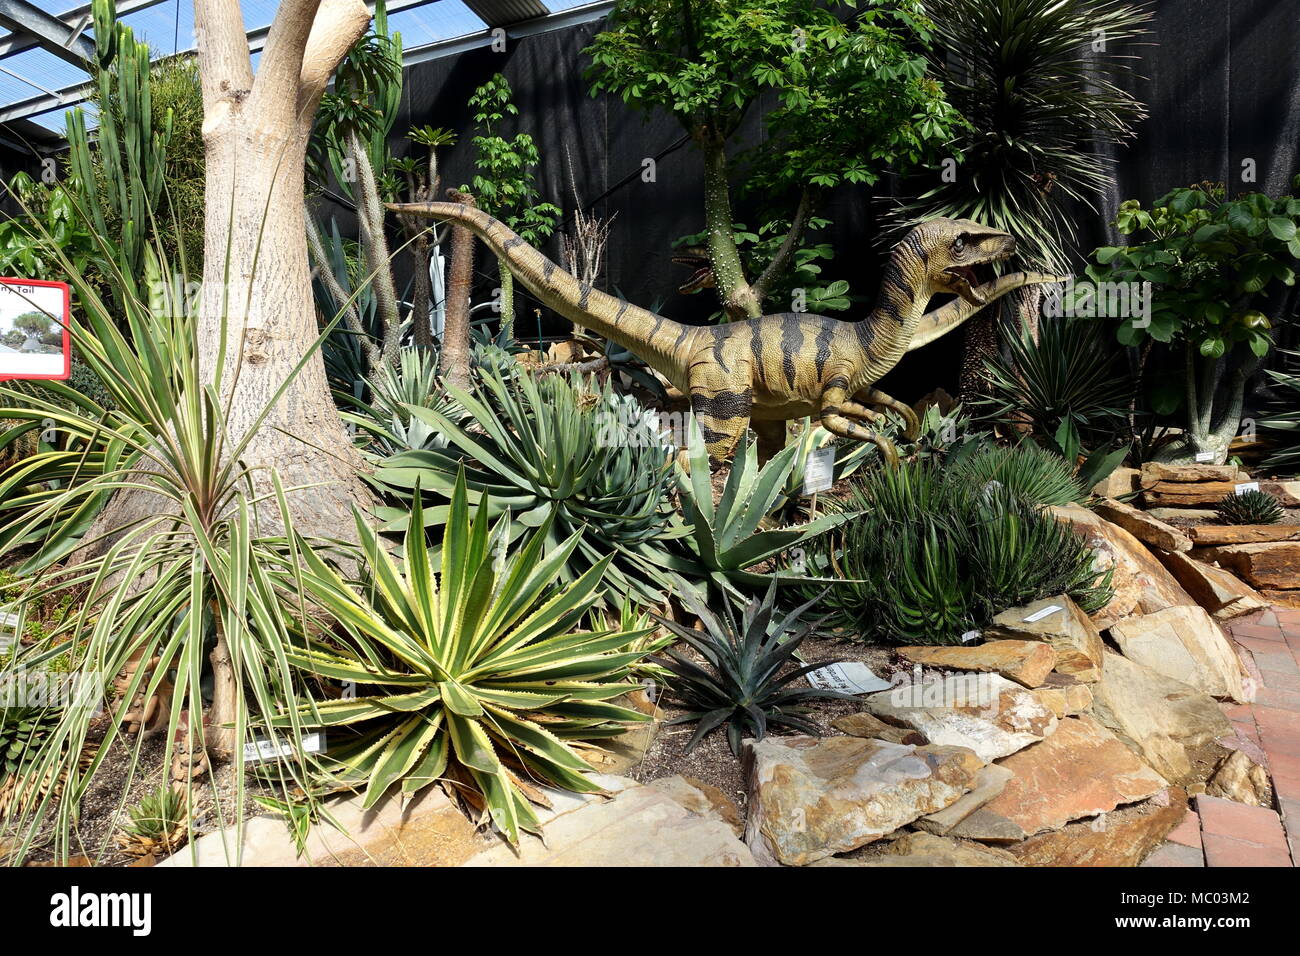 Dinosaure sculpture dans une pépinière de cactus à Melbourne Australie Victoria Banque D'Images